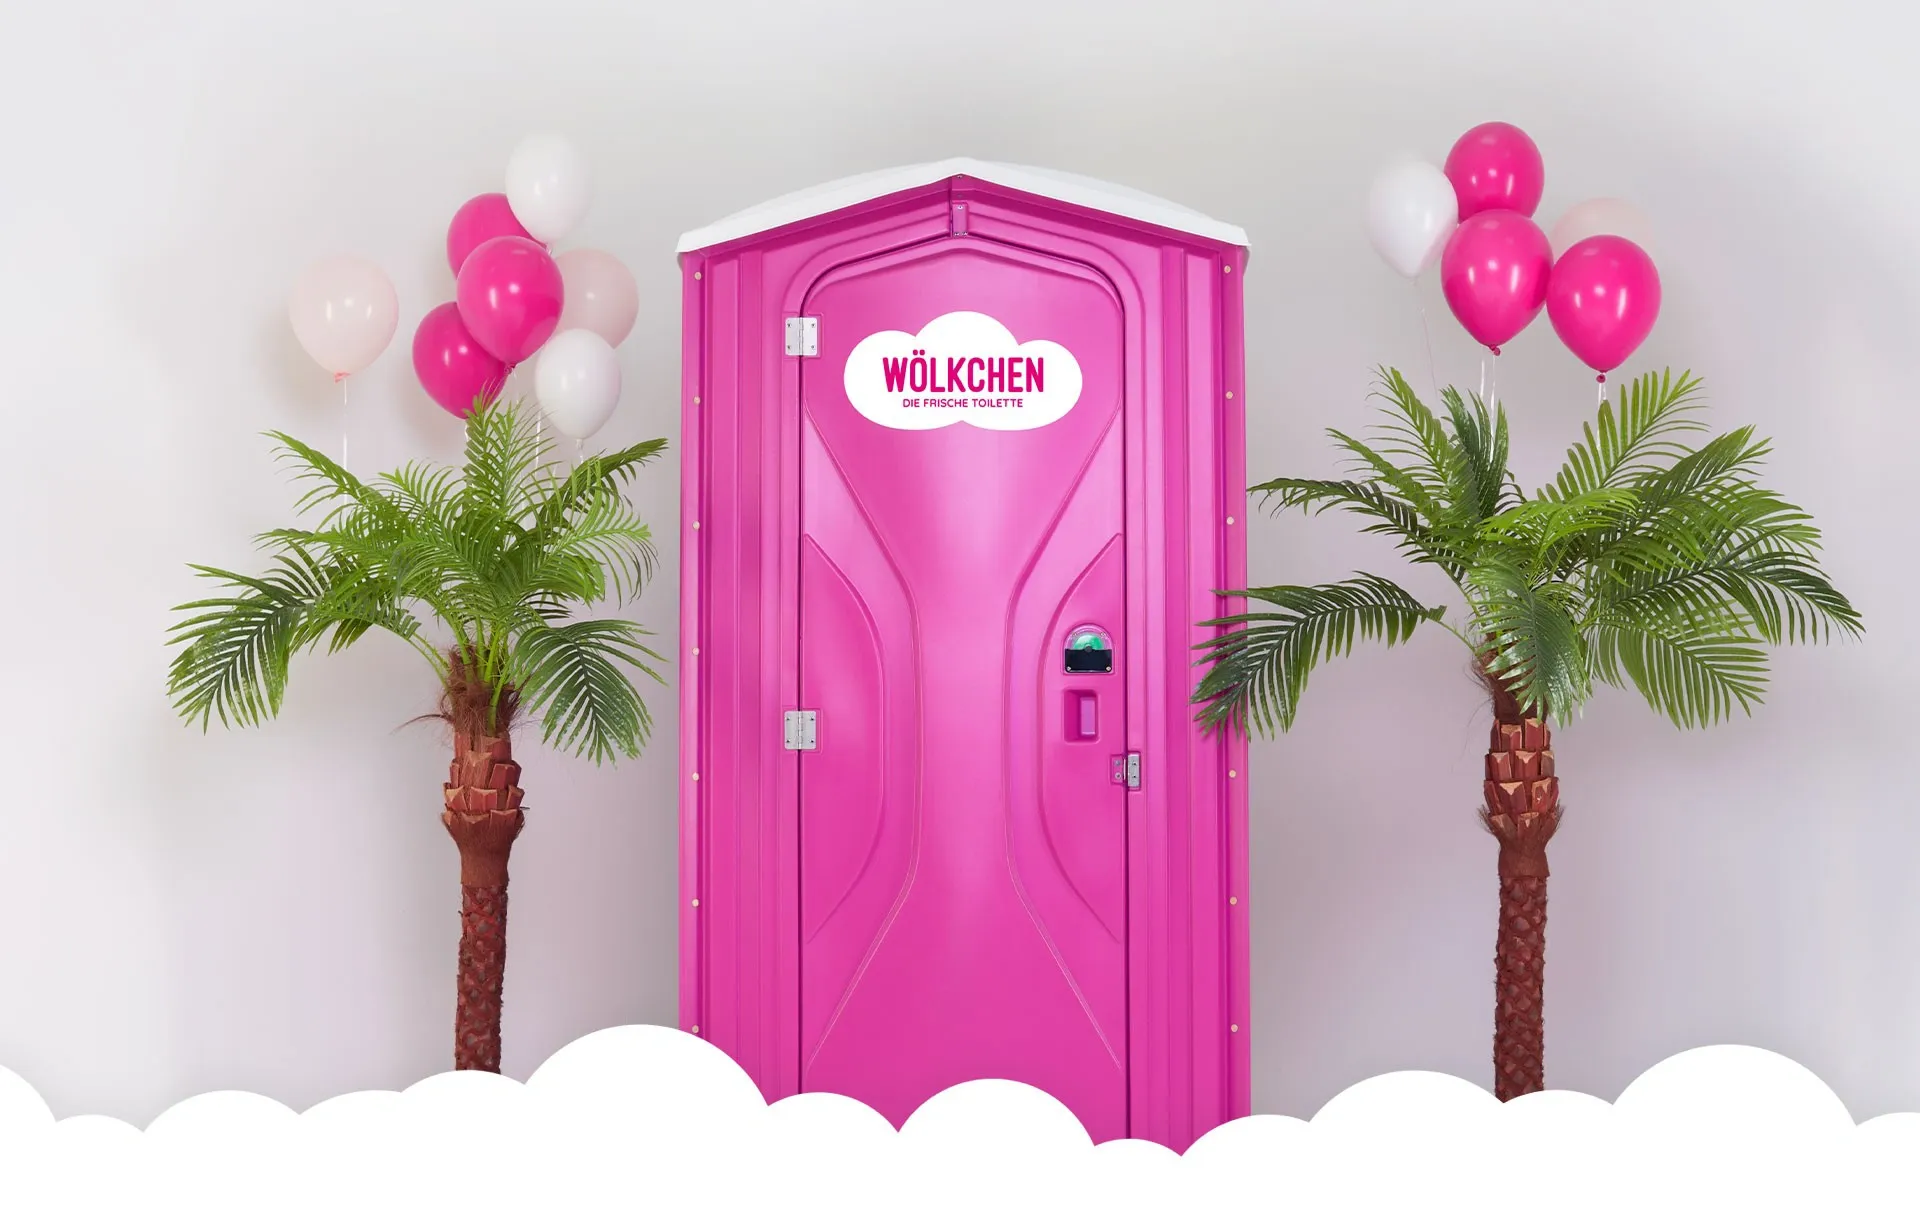 Ein Bild zeigt die frische Toilette von Wölkchen in Pink zur Kampagne 